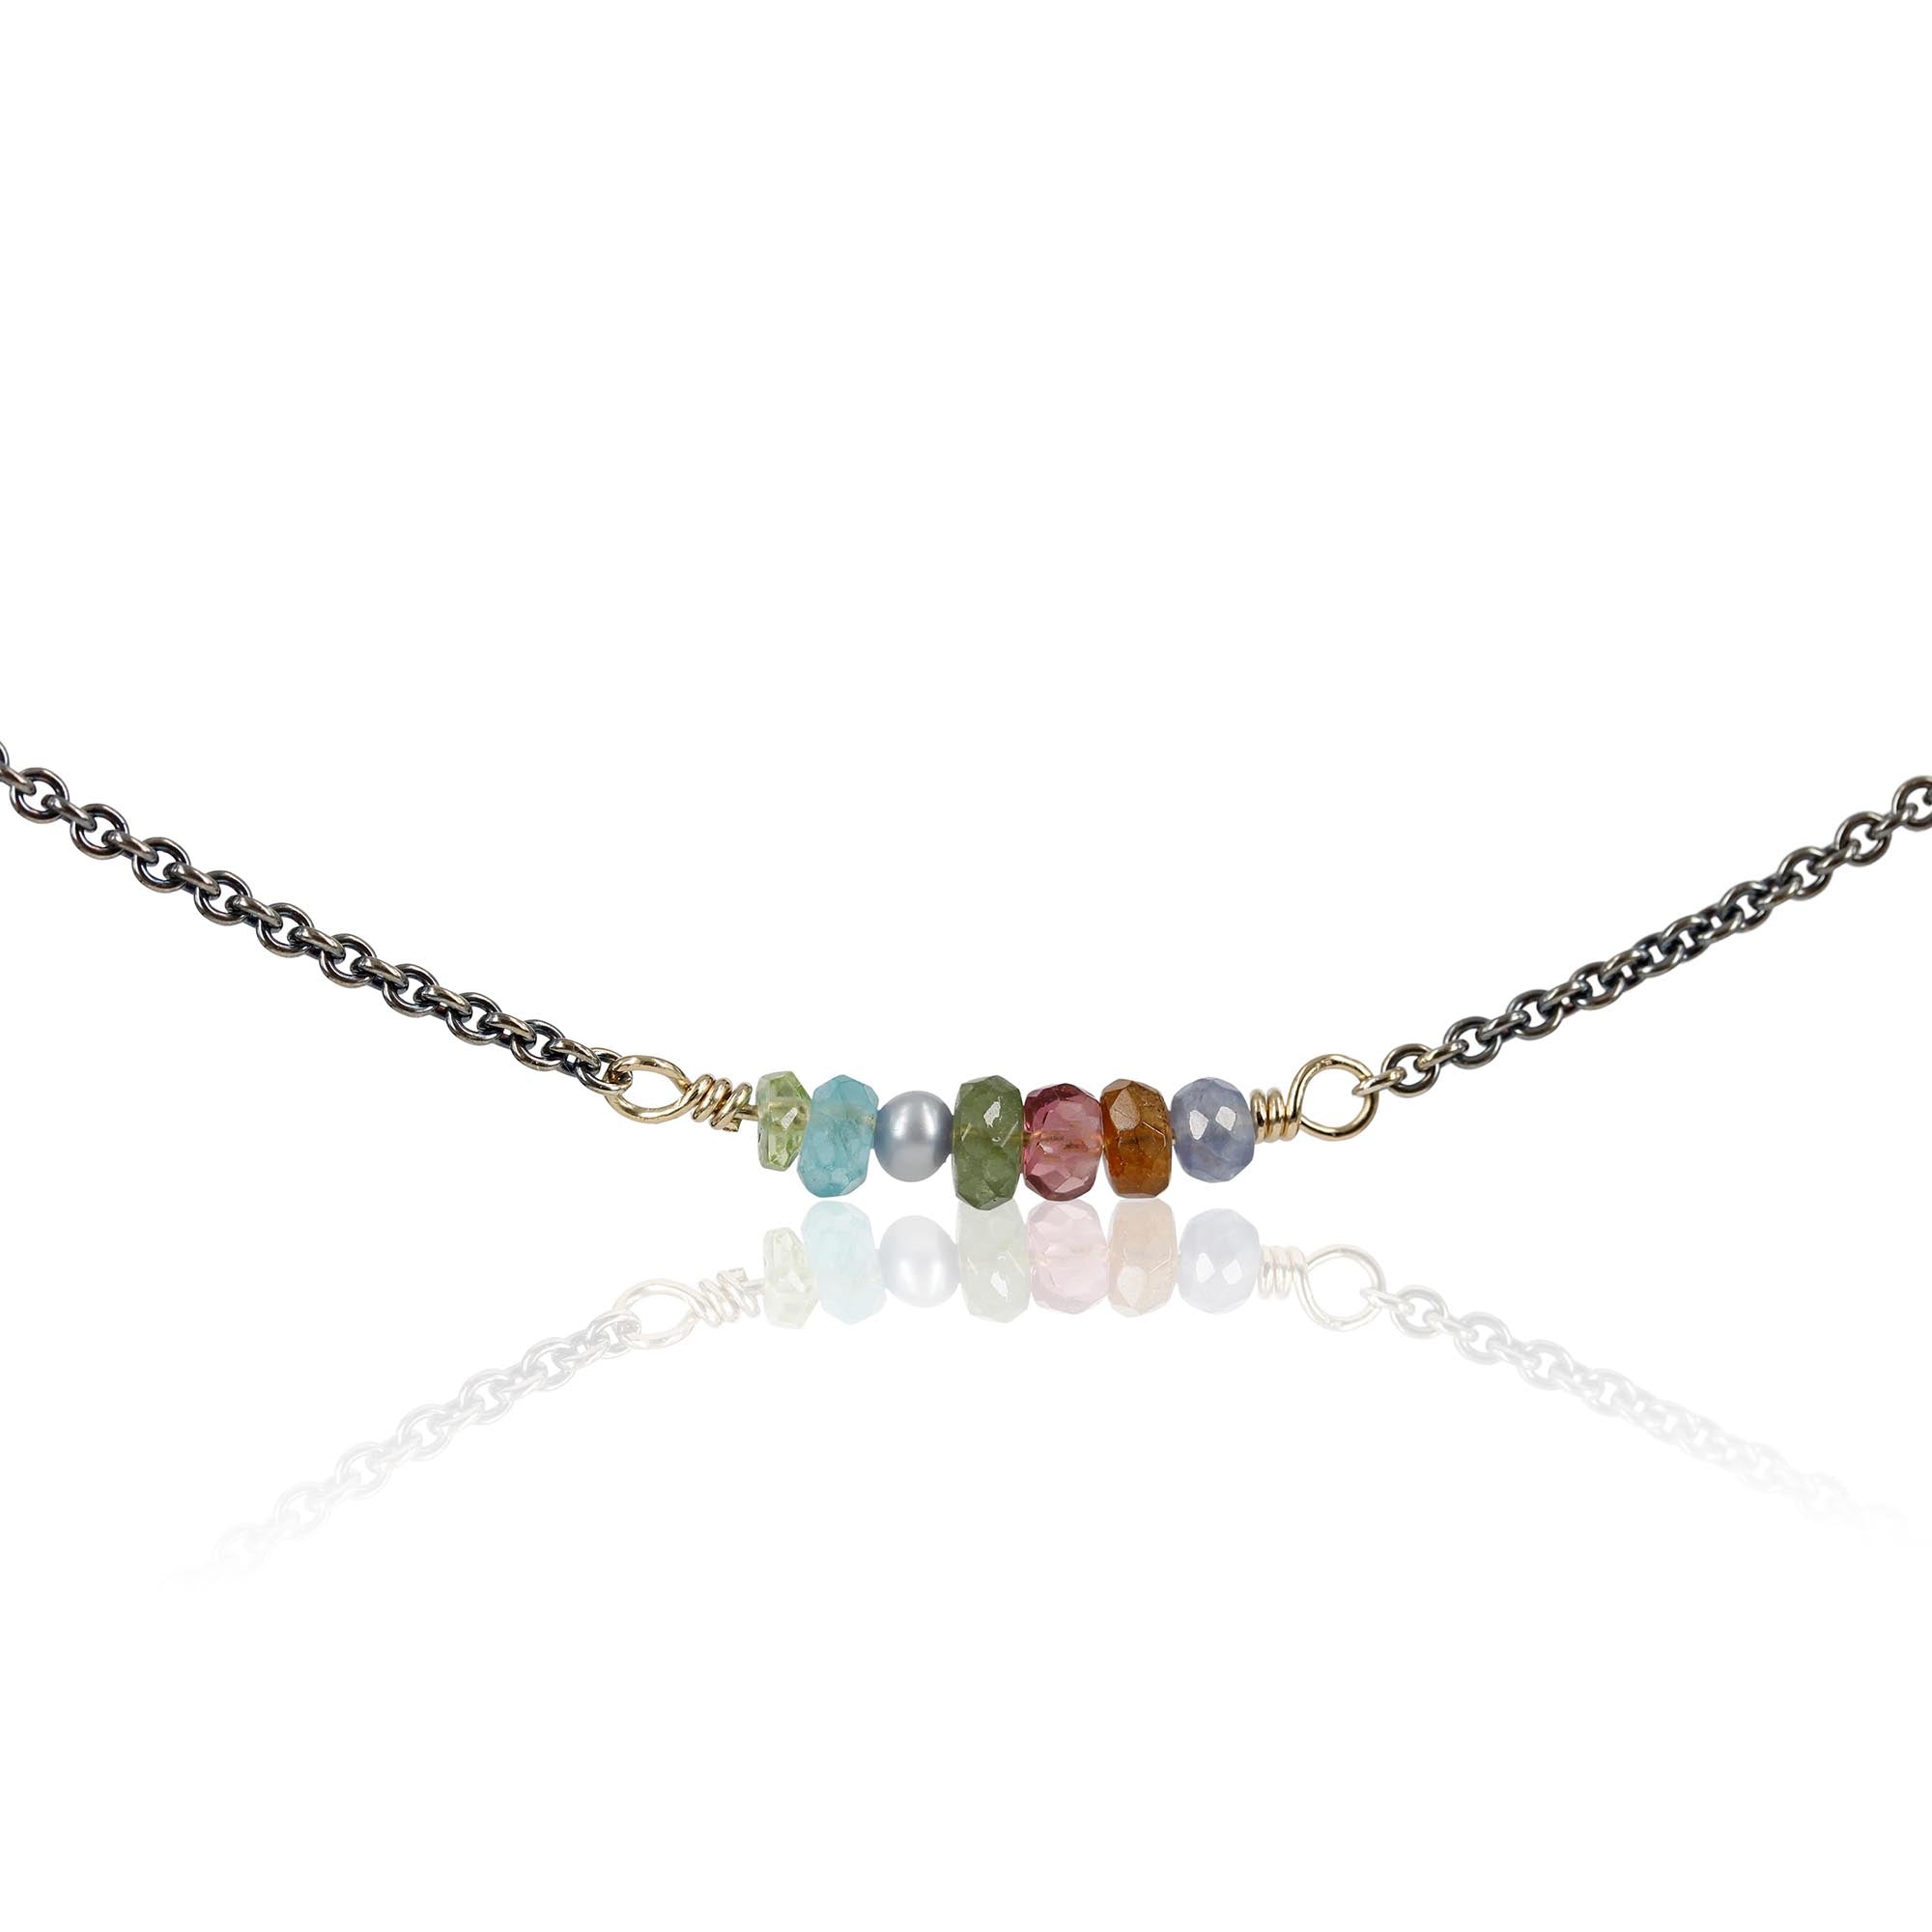 Rainbow - Smuk halskæde med skønne farvestrålende sten  Smuk og enkel kæde med fine sten i skønne farver - denne er i lækre grøn/blå nuancer - Aquamarin, perle, turmalin, safir, citrin & bjergkrystal.